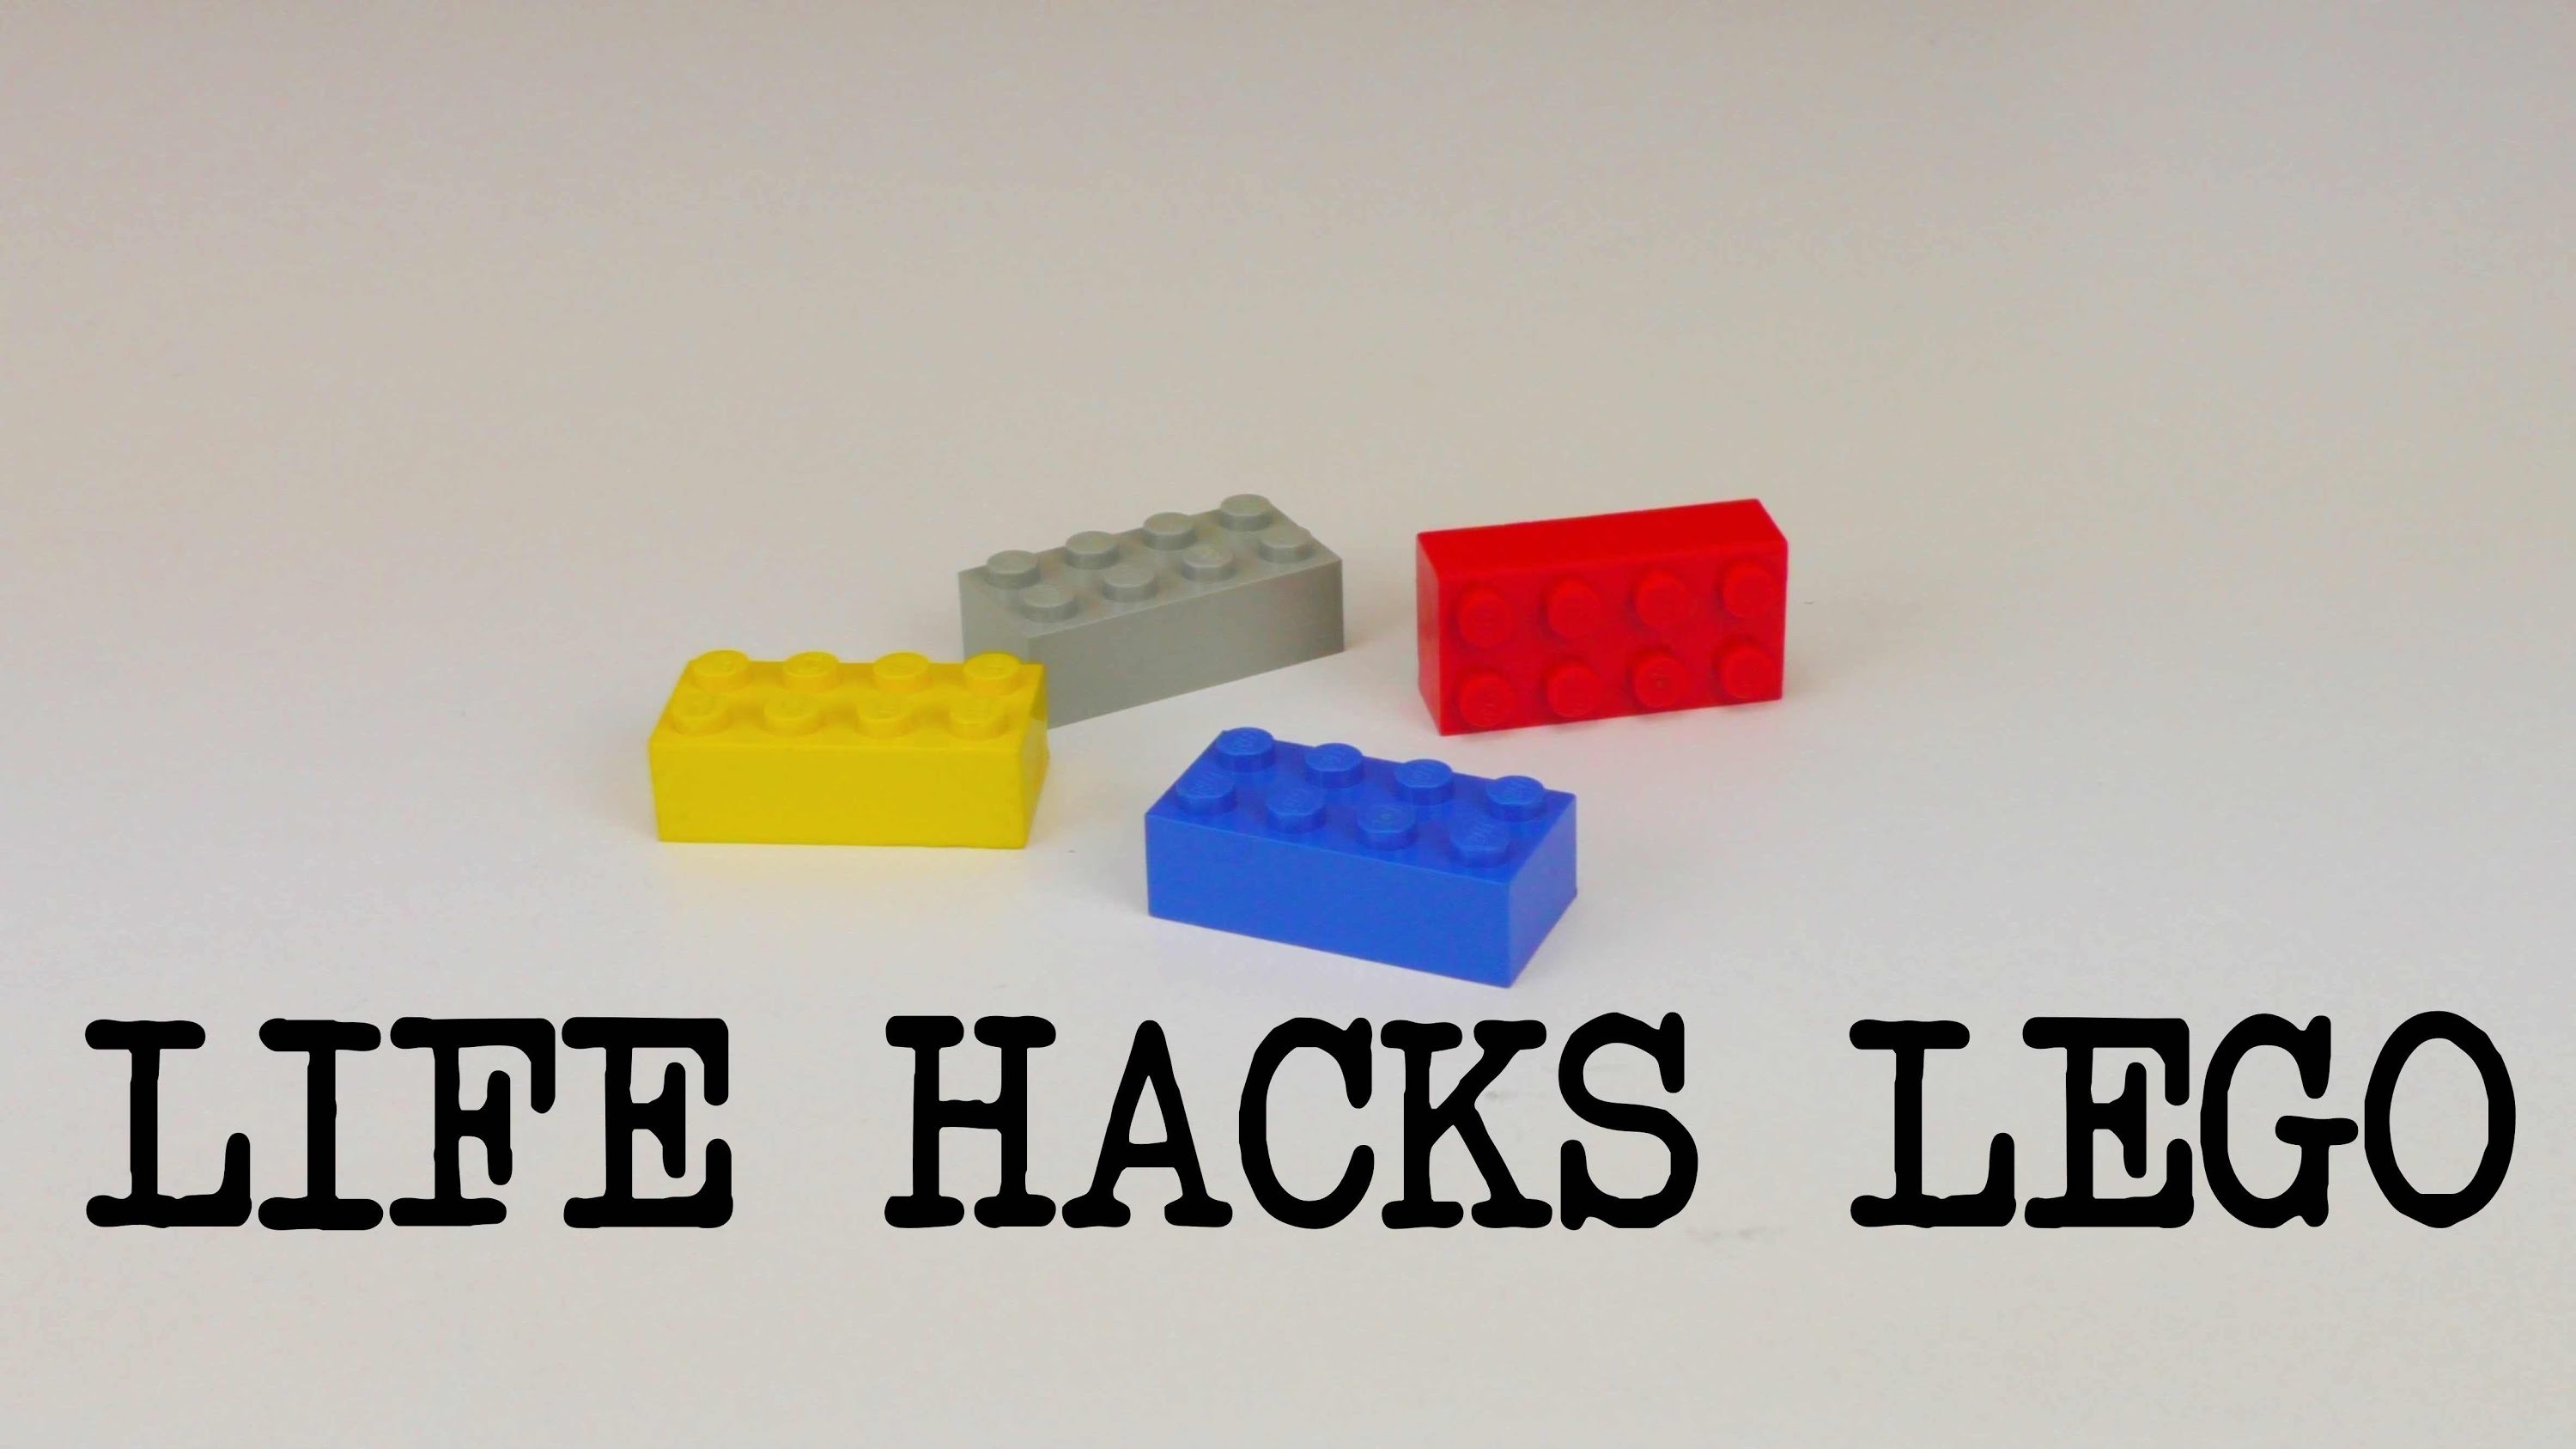 Life Hacks Top 5! LEGO Tipps und Tricks rund um Legosteine | deutsch